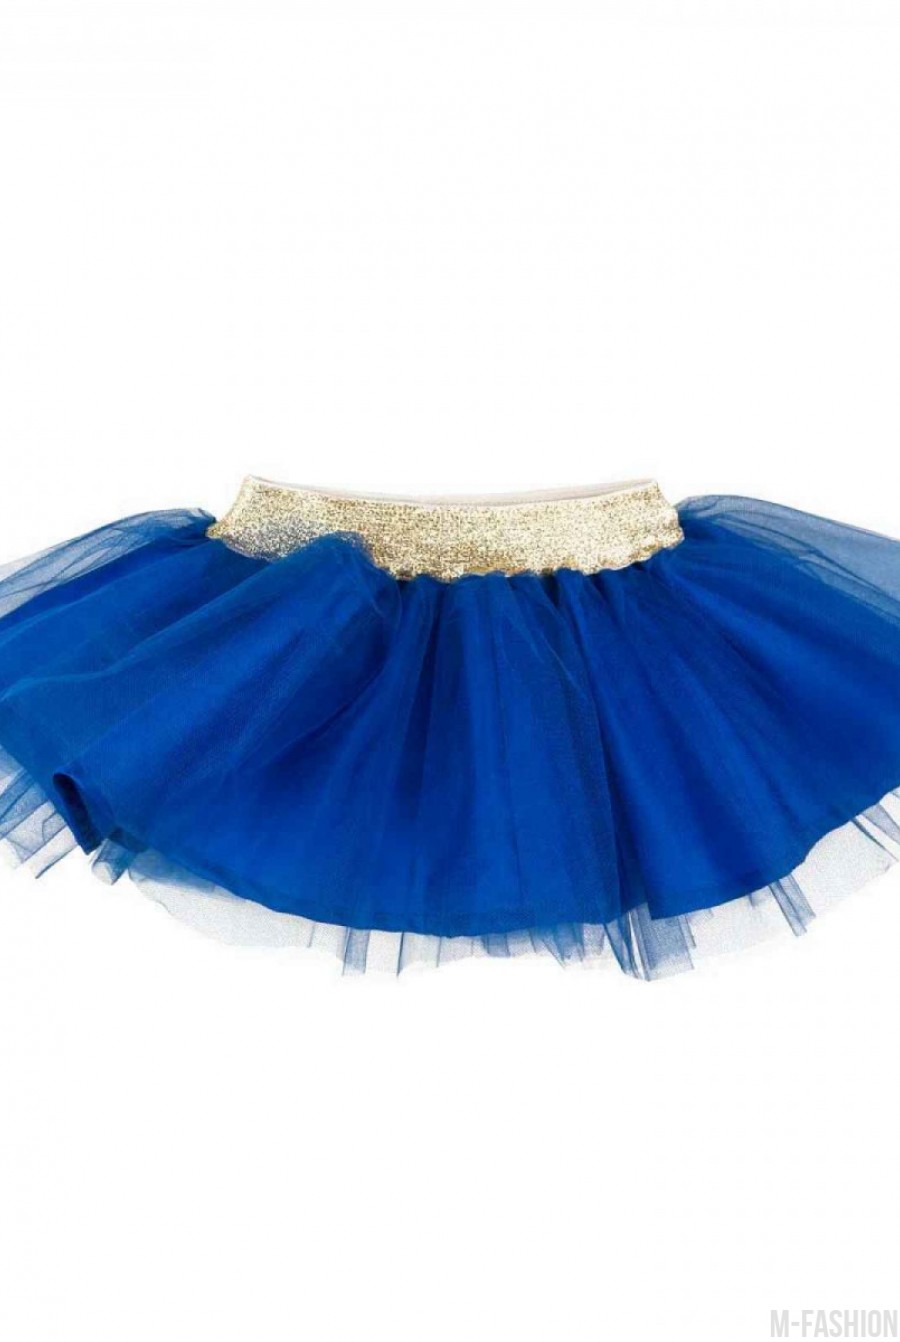 Синяя пышная юбка из тафты и фатина с золотистым поясом - Фото 1